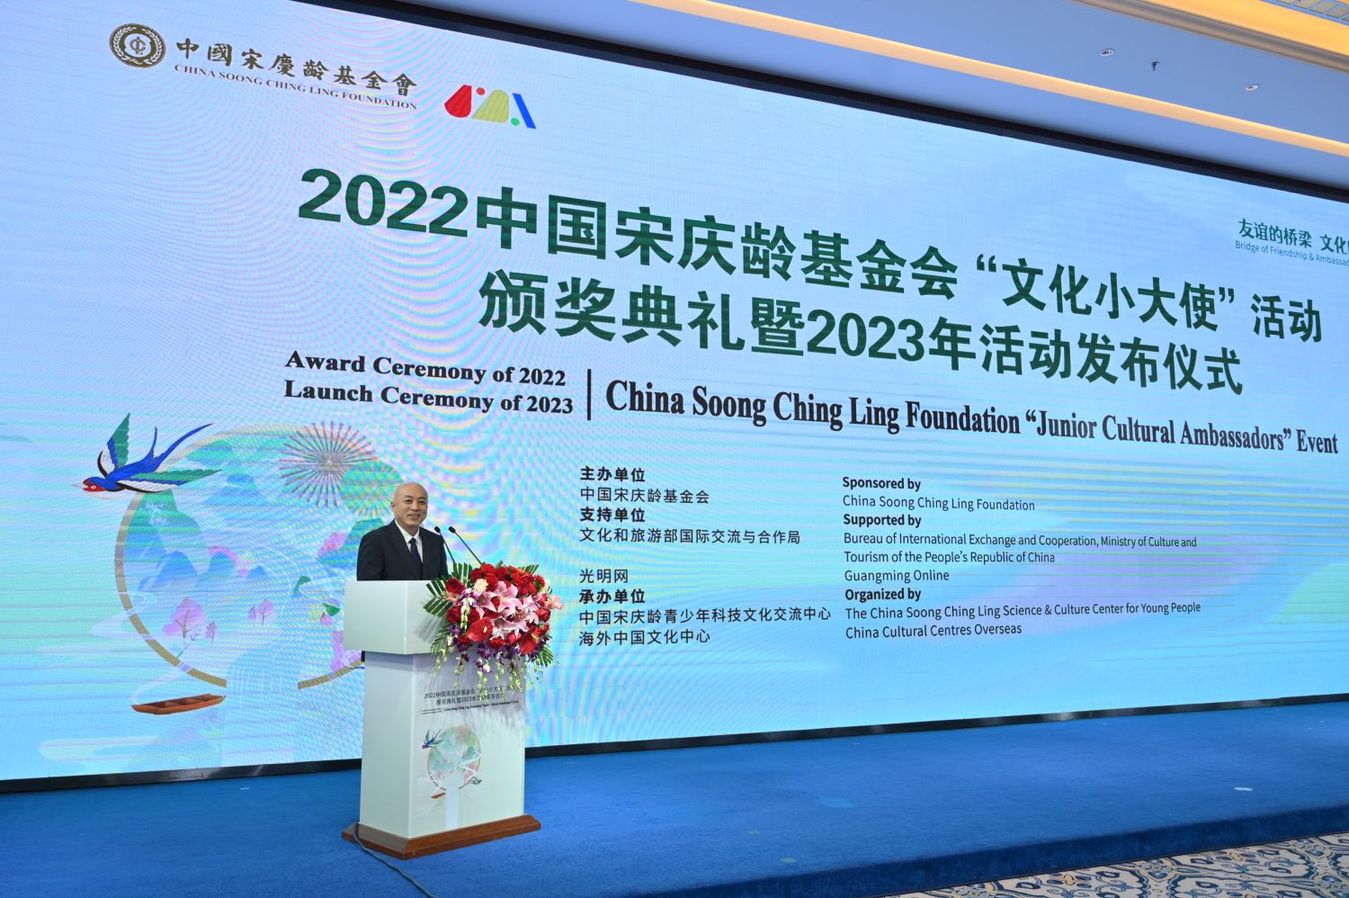 2022中国宋庆龄基金会“文化小大使”活动在京颁奖【组图】